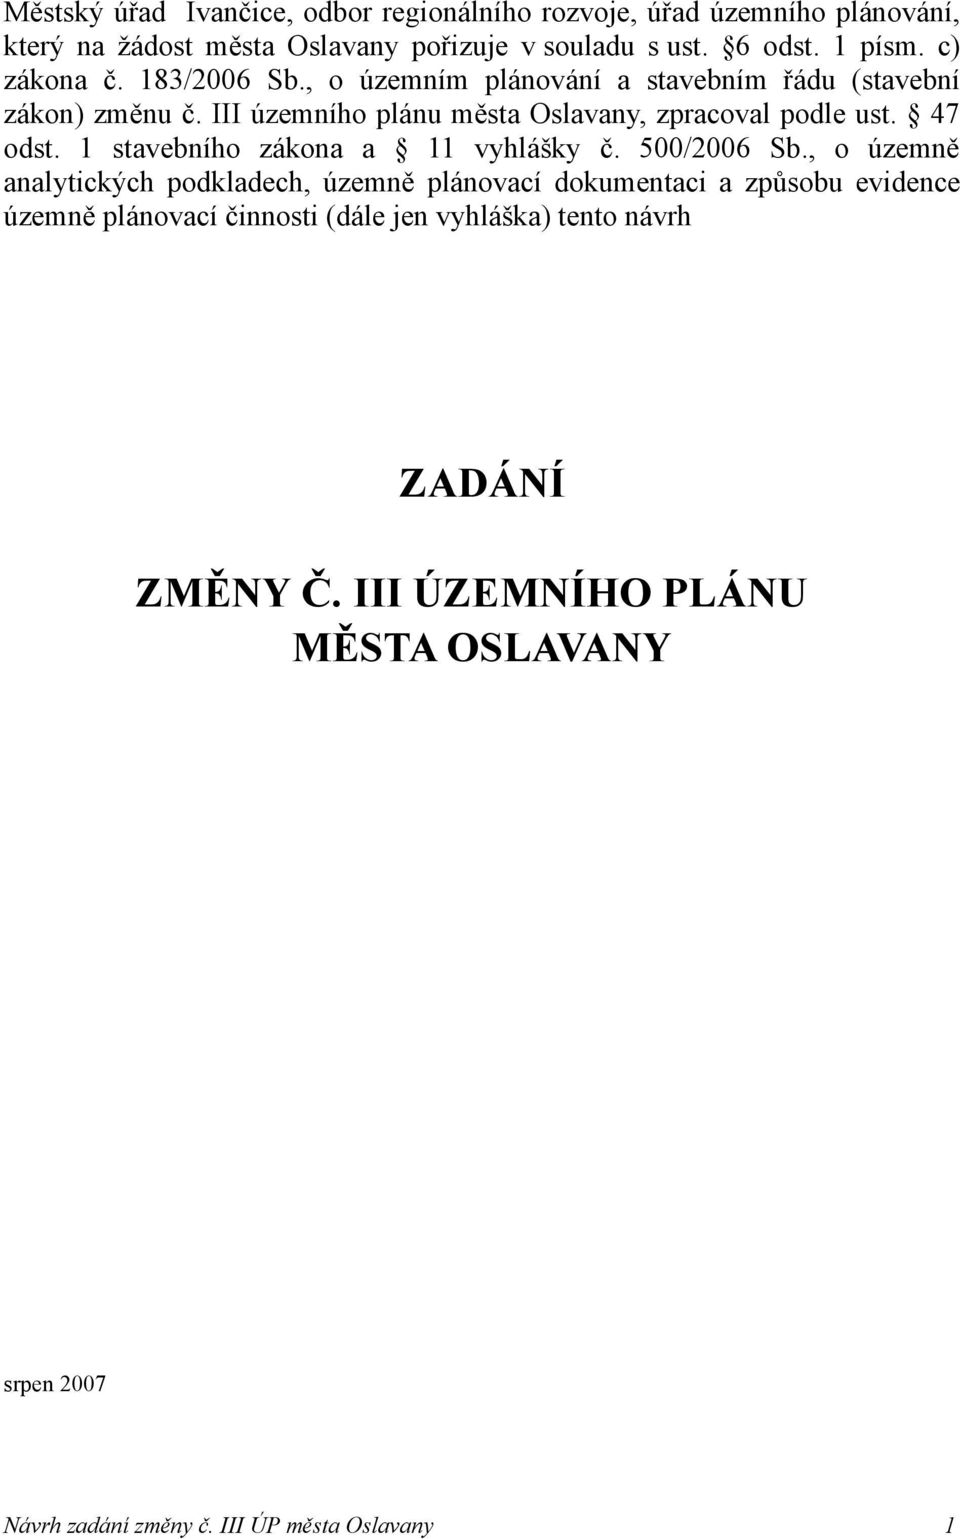 III územního plánu města Oslavany, zpracoval podle ust. 47 odst. 1 stavebního zákona a 11 vyhlášky č. 500/2006 Sb.